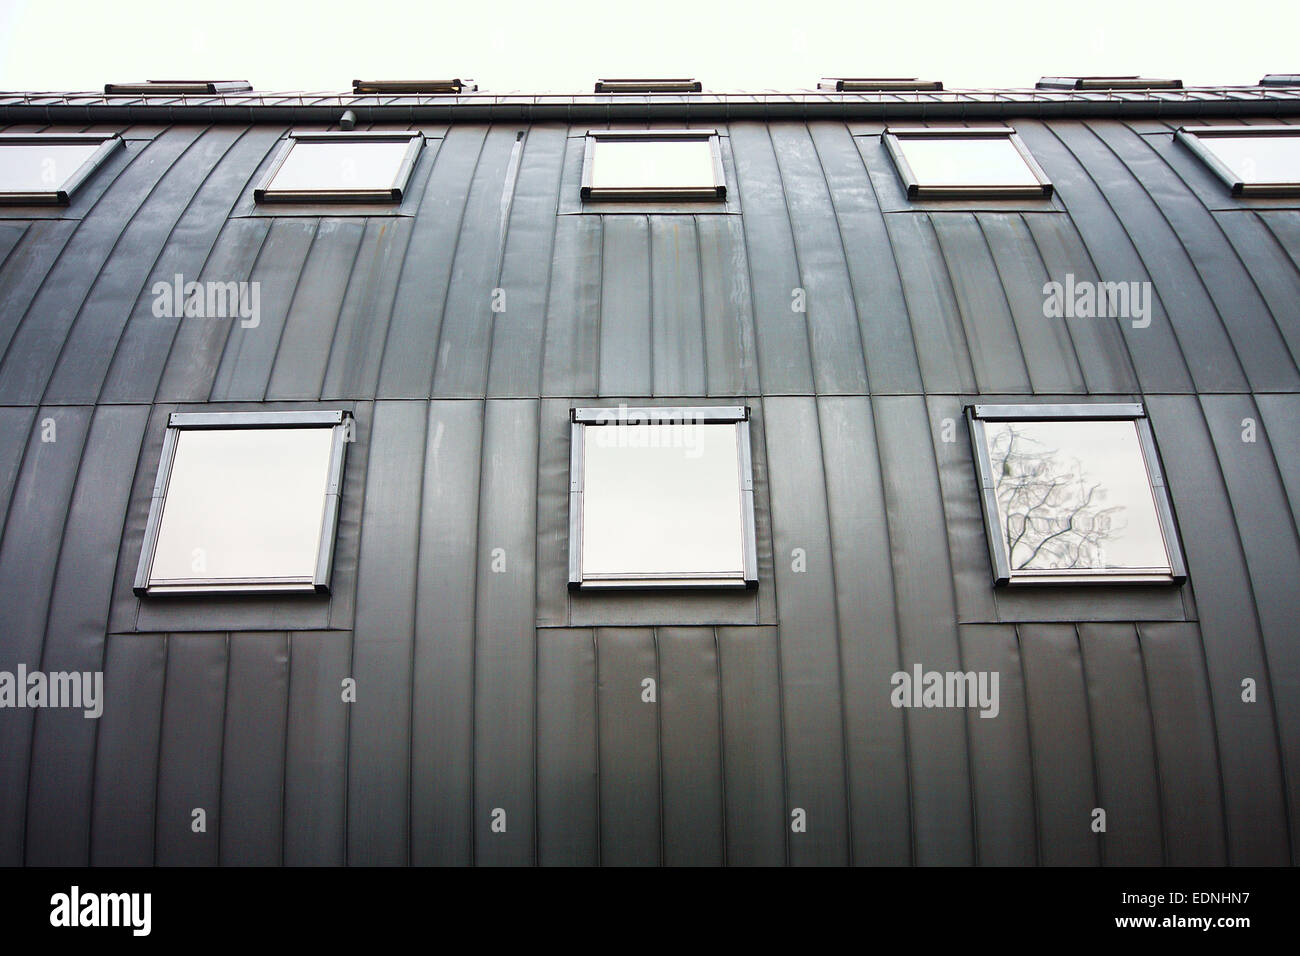 Abstrakt Architektur in schwarz / weiß Stockfoto